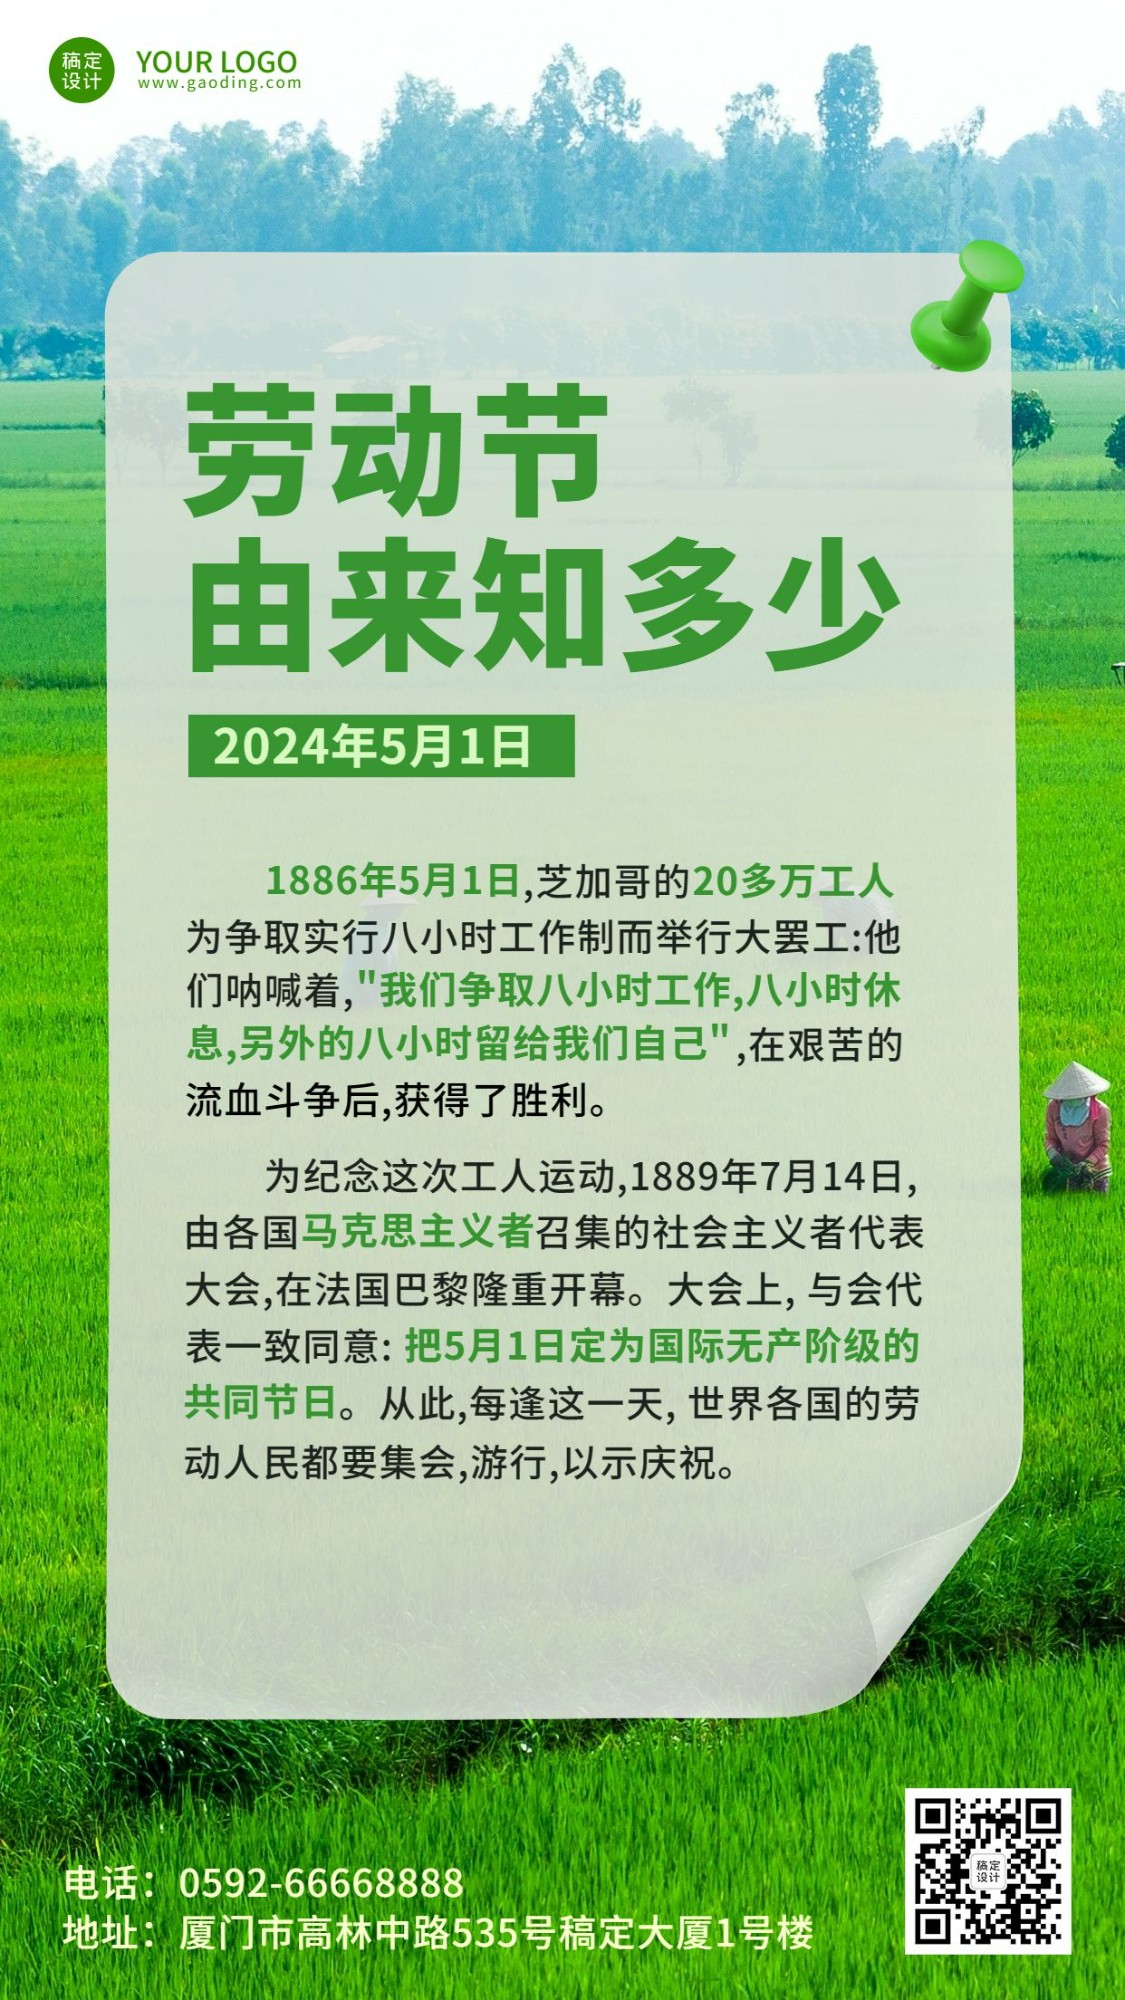 劳动节节日由来排版手机海报